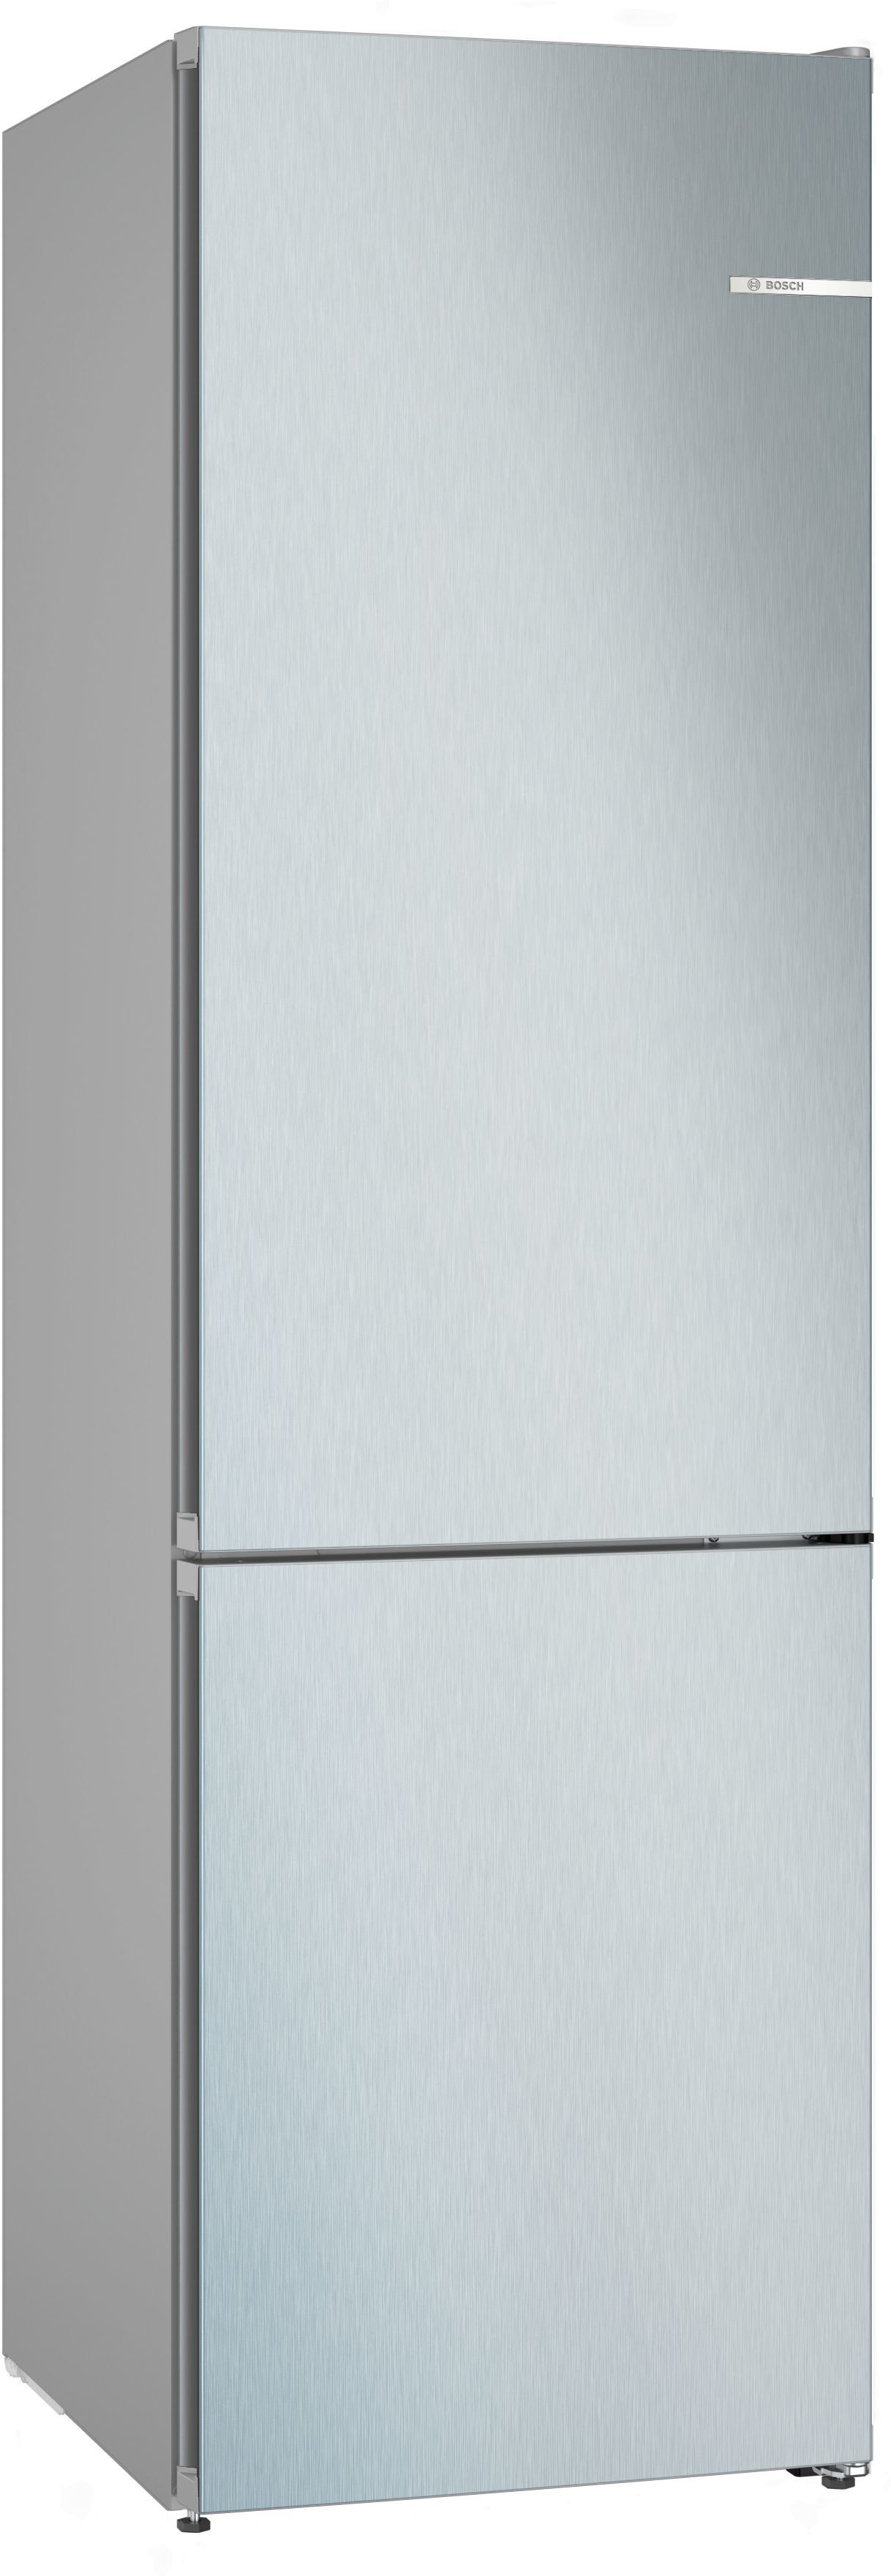 Image of Bosch Serie 4 KGN392LCF frigorifero con congelatore Libera installazione 363 L C Acciaio inossidabile